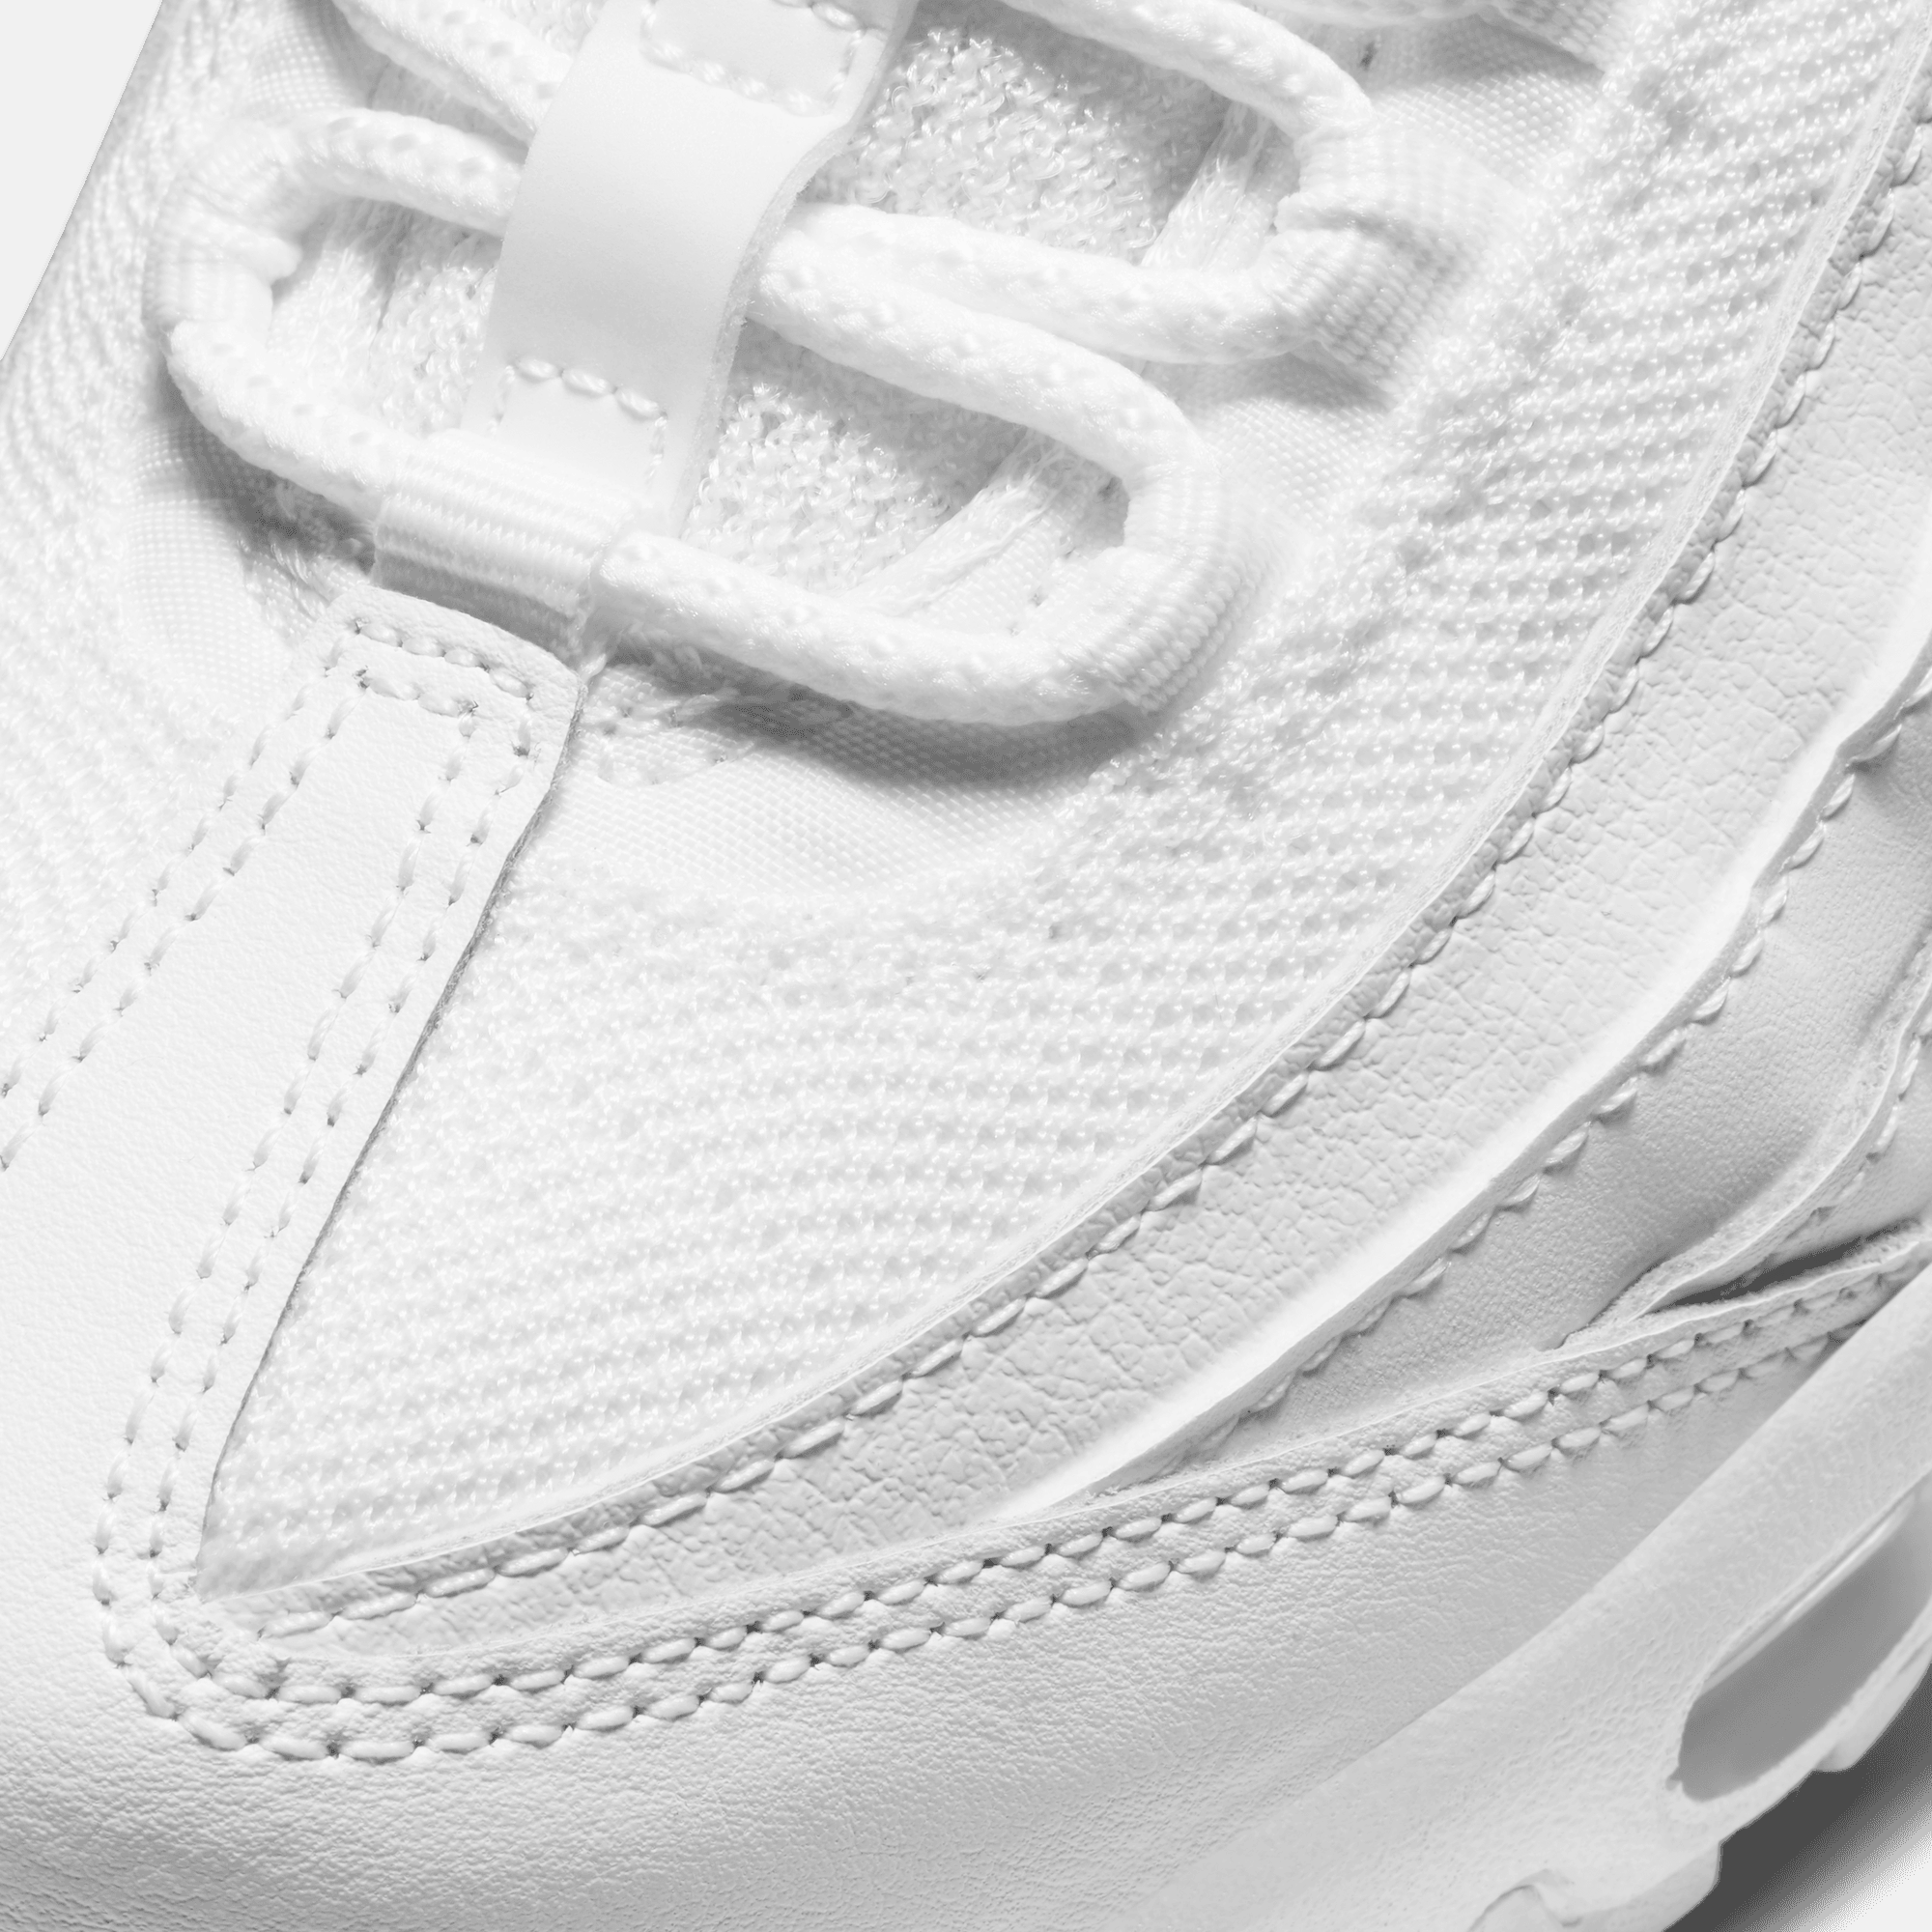 Nike Air Max 95 Recraft All White (GS)